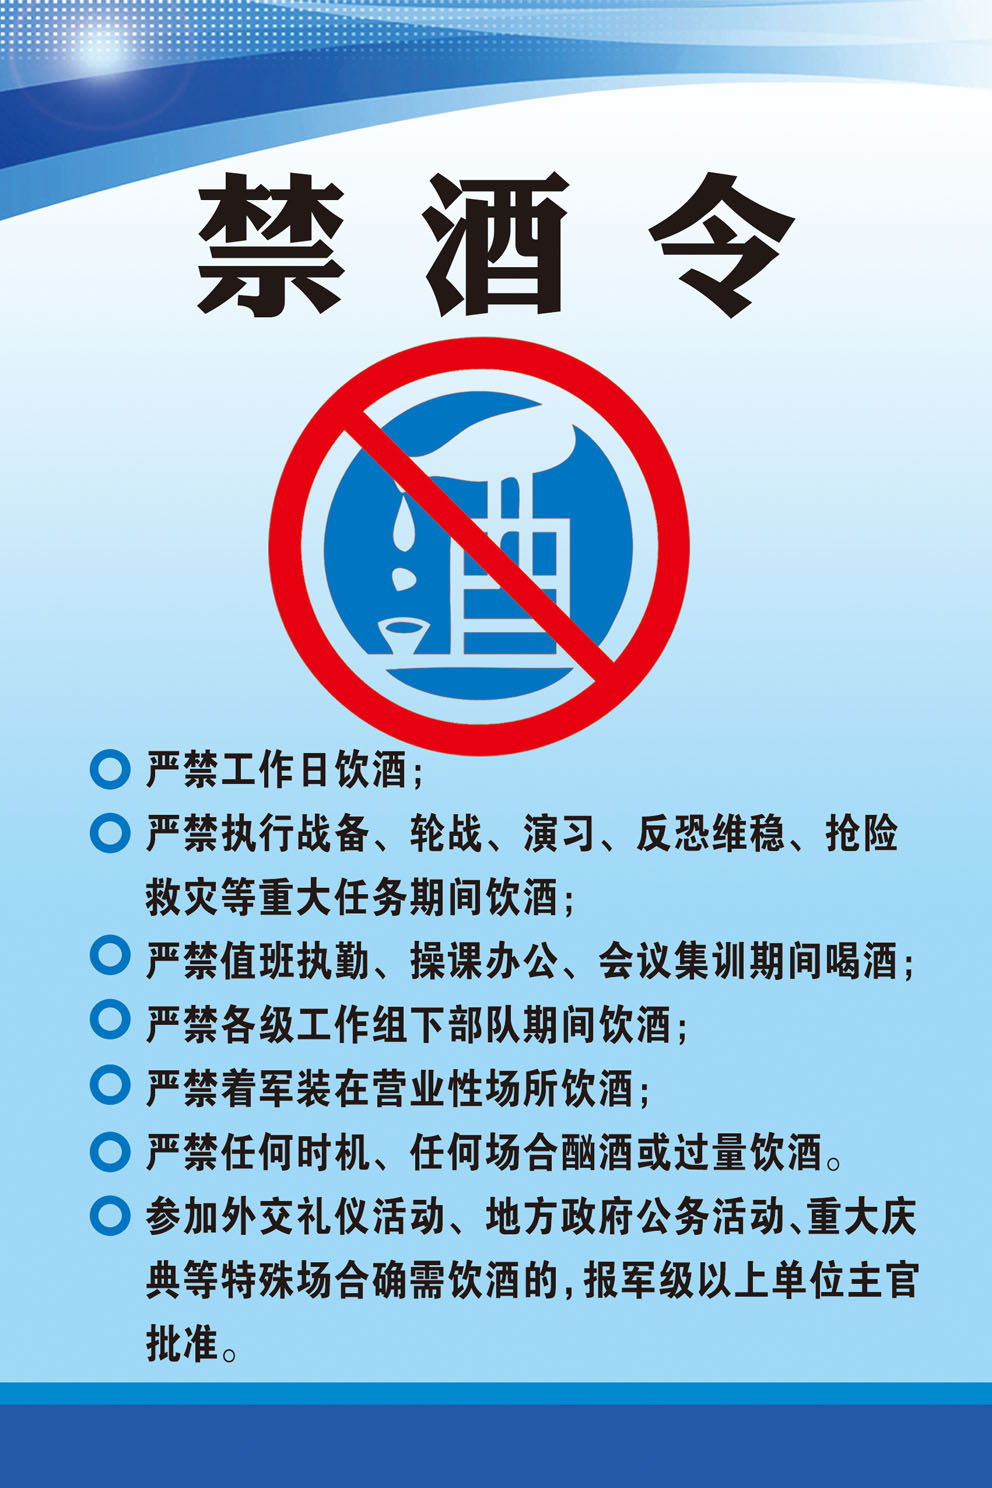 770企业单位工作期间禁酒令温馨提示290海报印制展板写真喷绘摆件